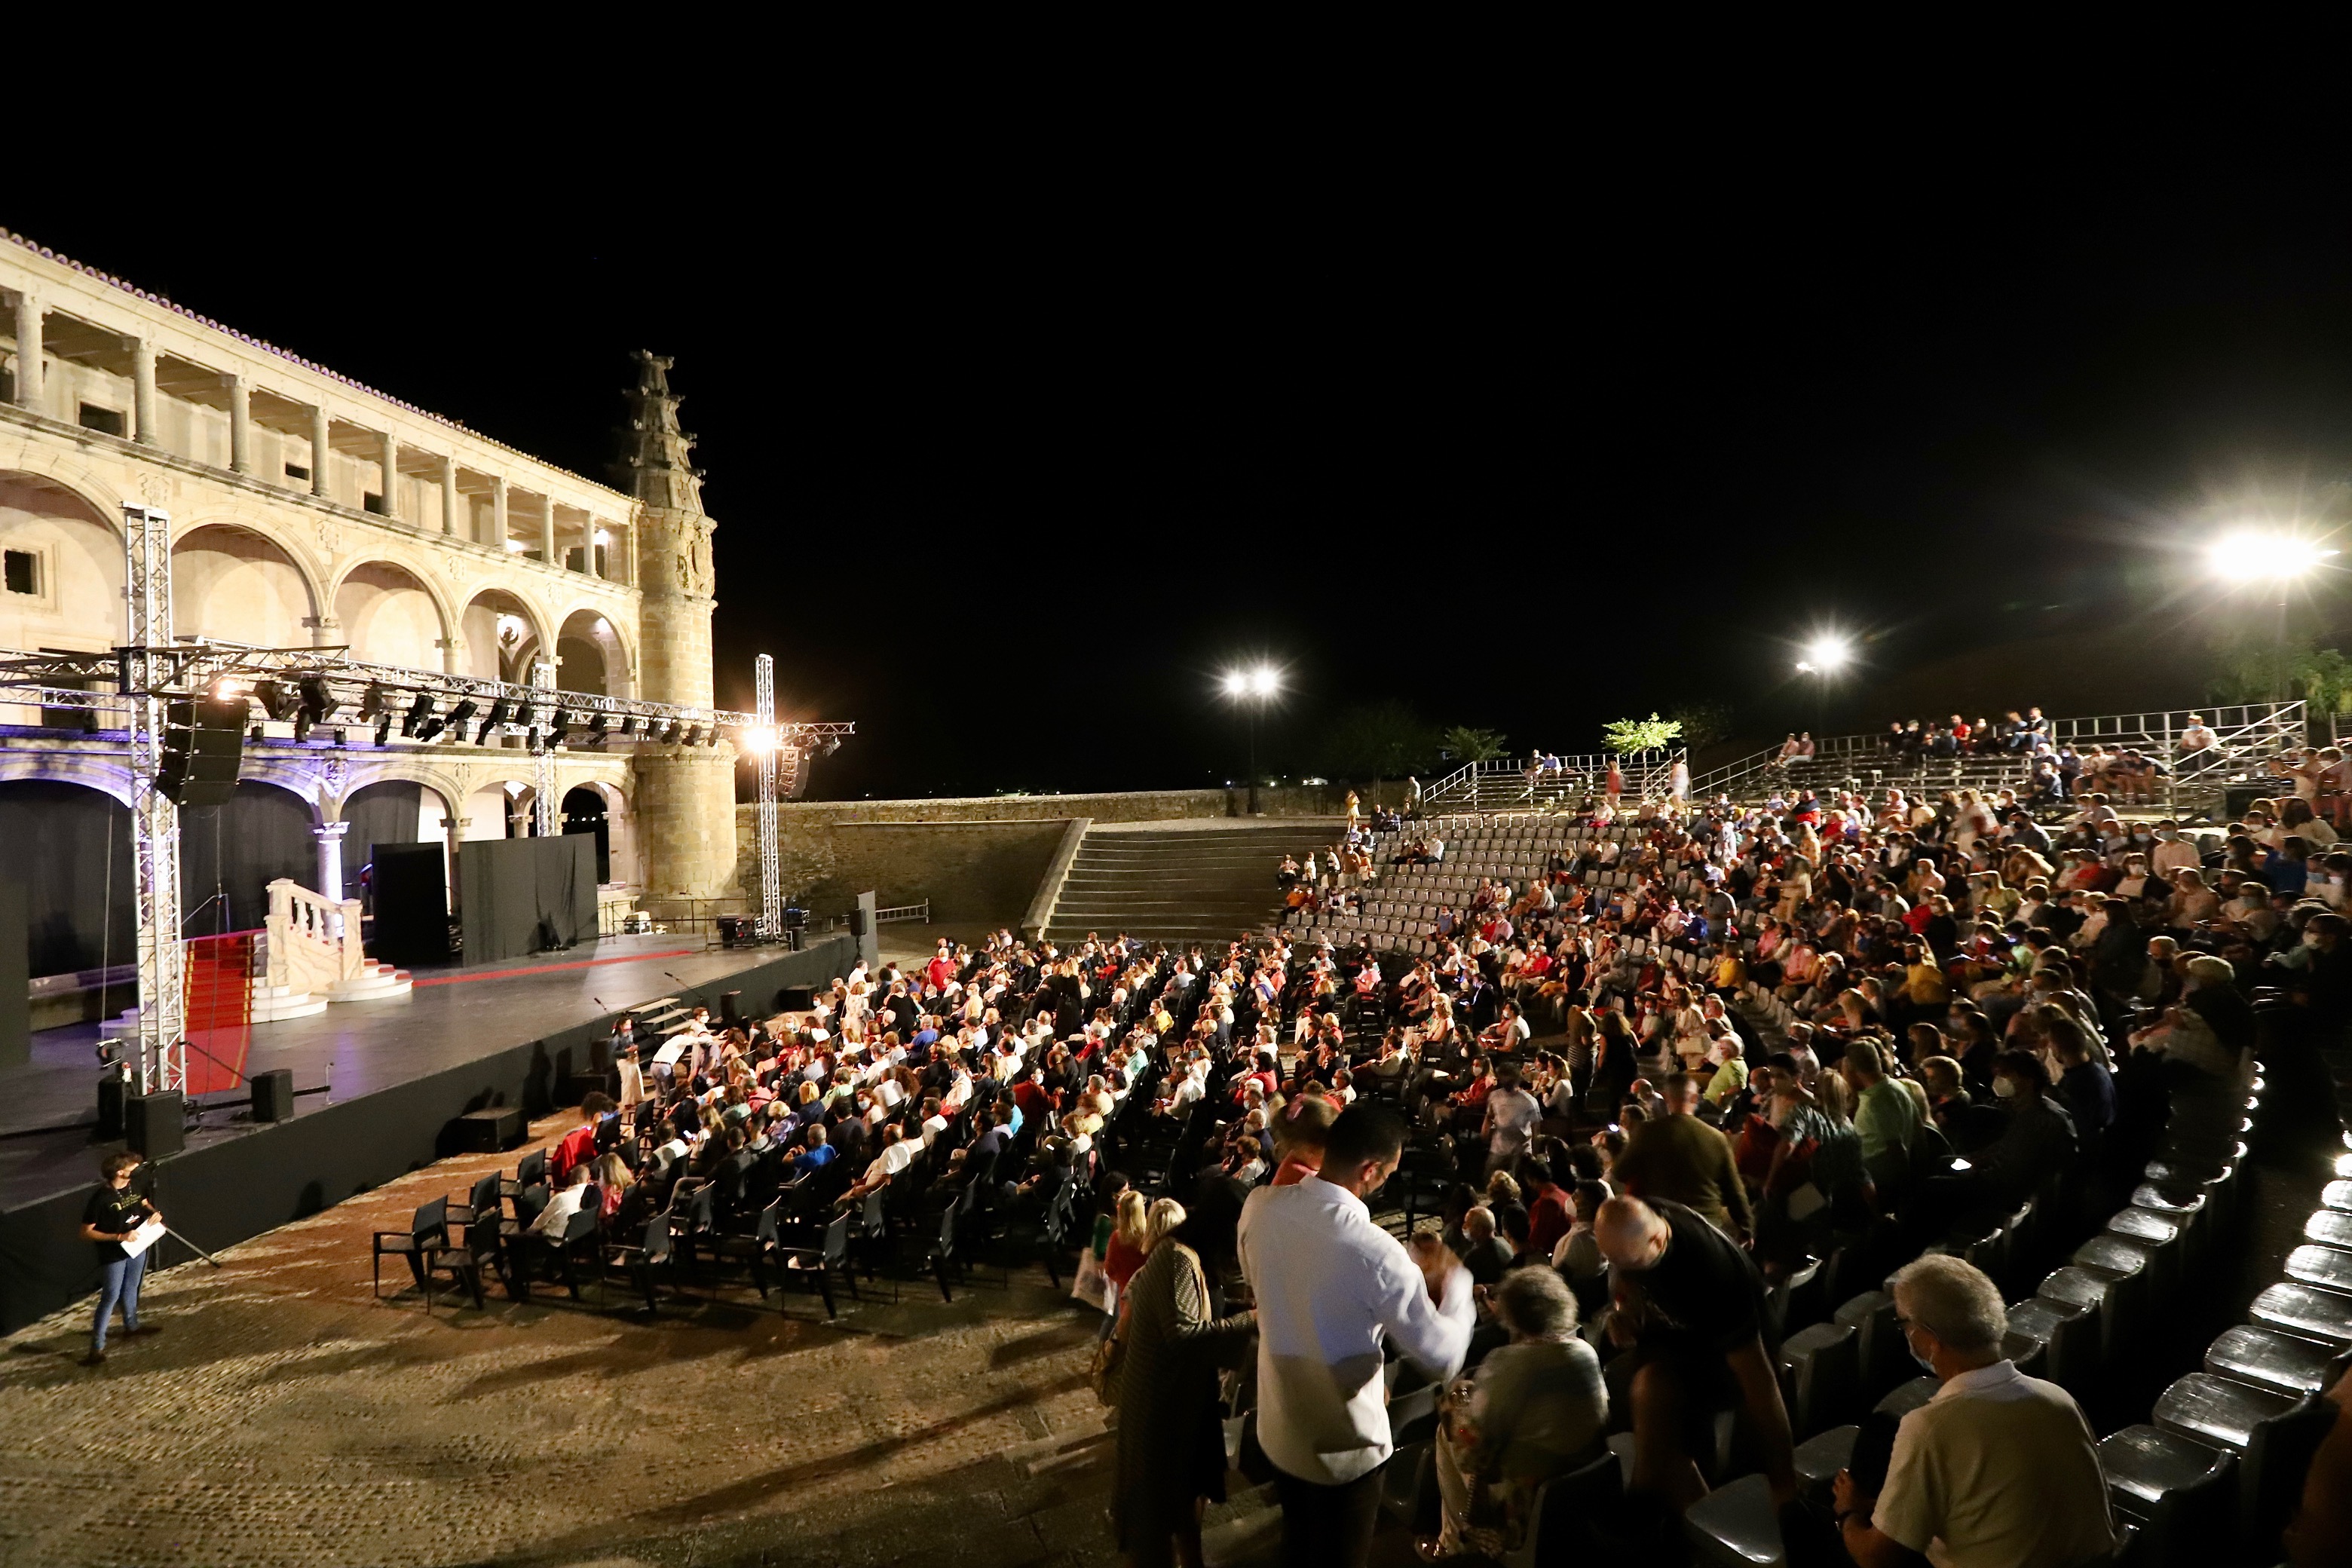 Festival de Teatro de Alcántara